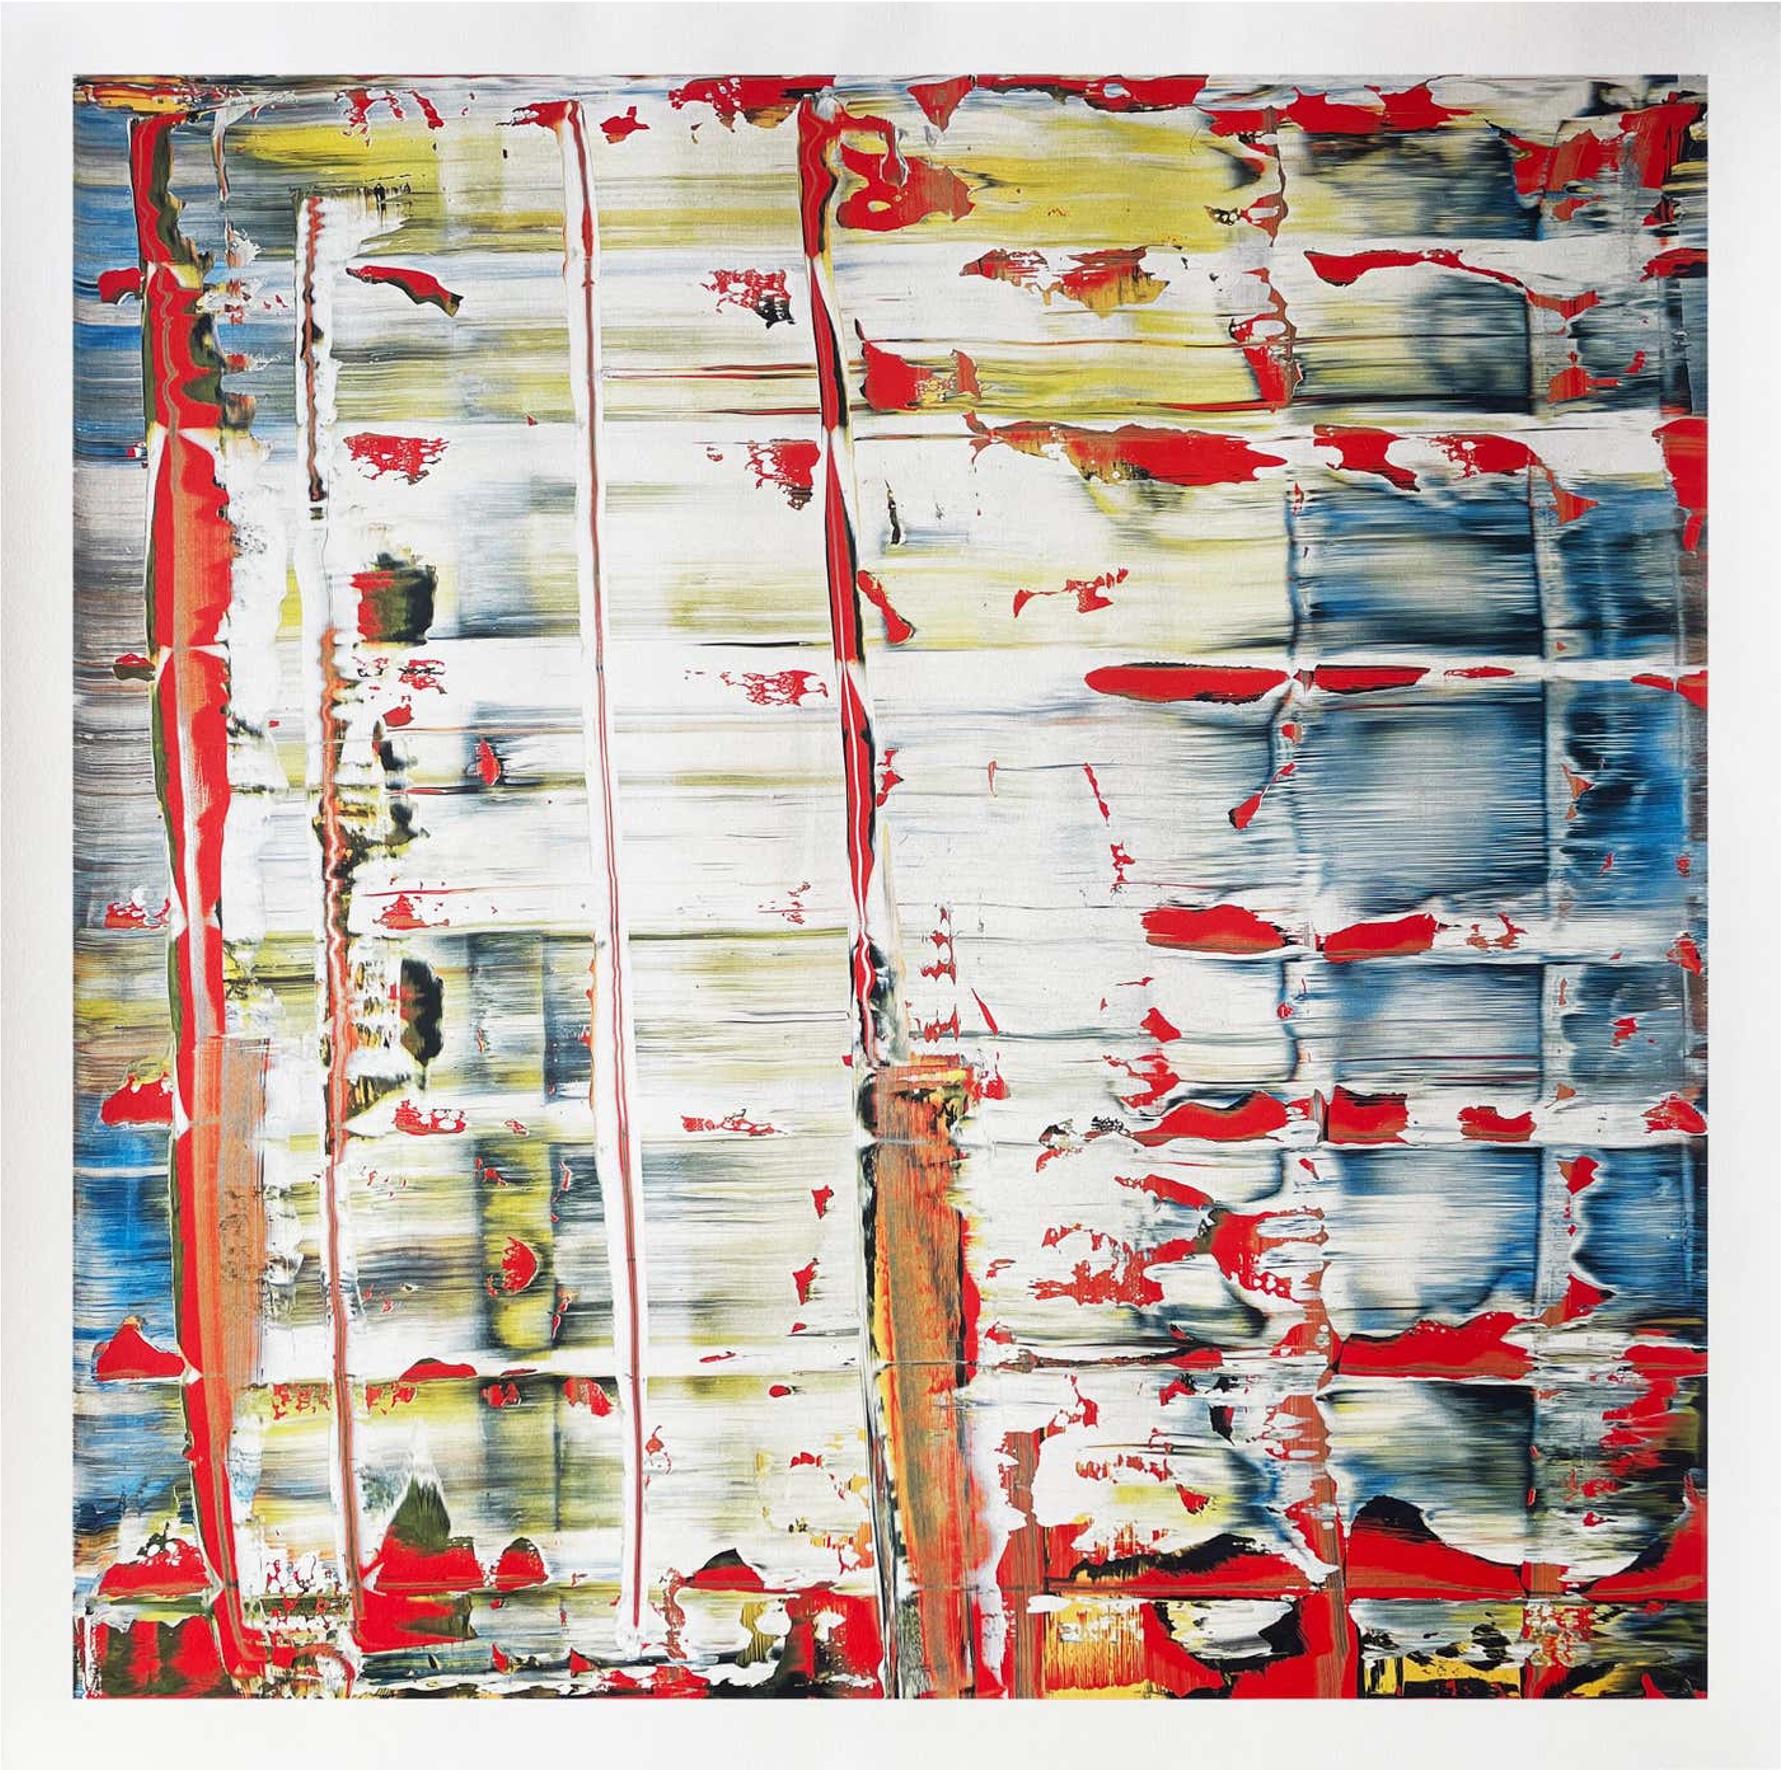 Gerhard Richter
Abstraktes Bild, 2023
6-Farben-Hybriddruck auf 260g Rives-Büttenpapier
27 3/5 × 27 3/5 in  70 × 70 cm
Auflage von 500 Stück